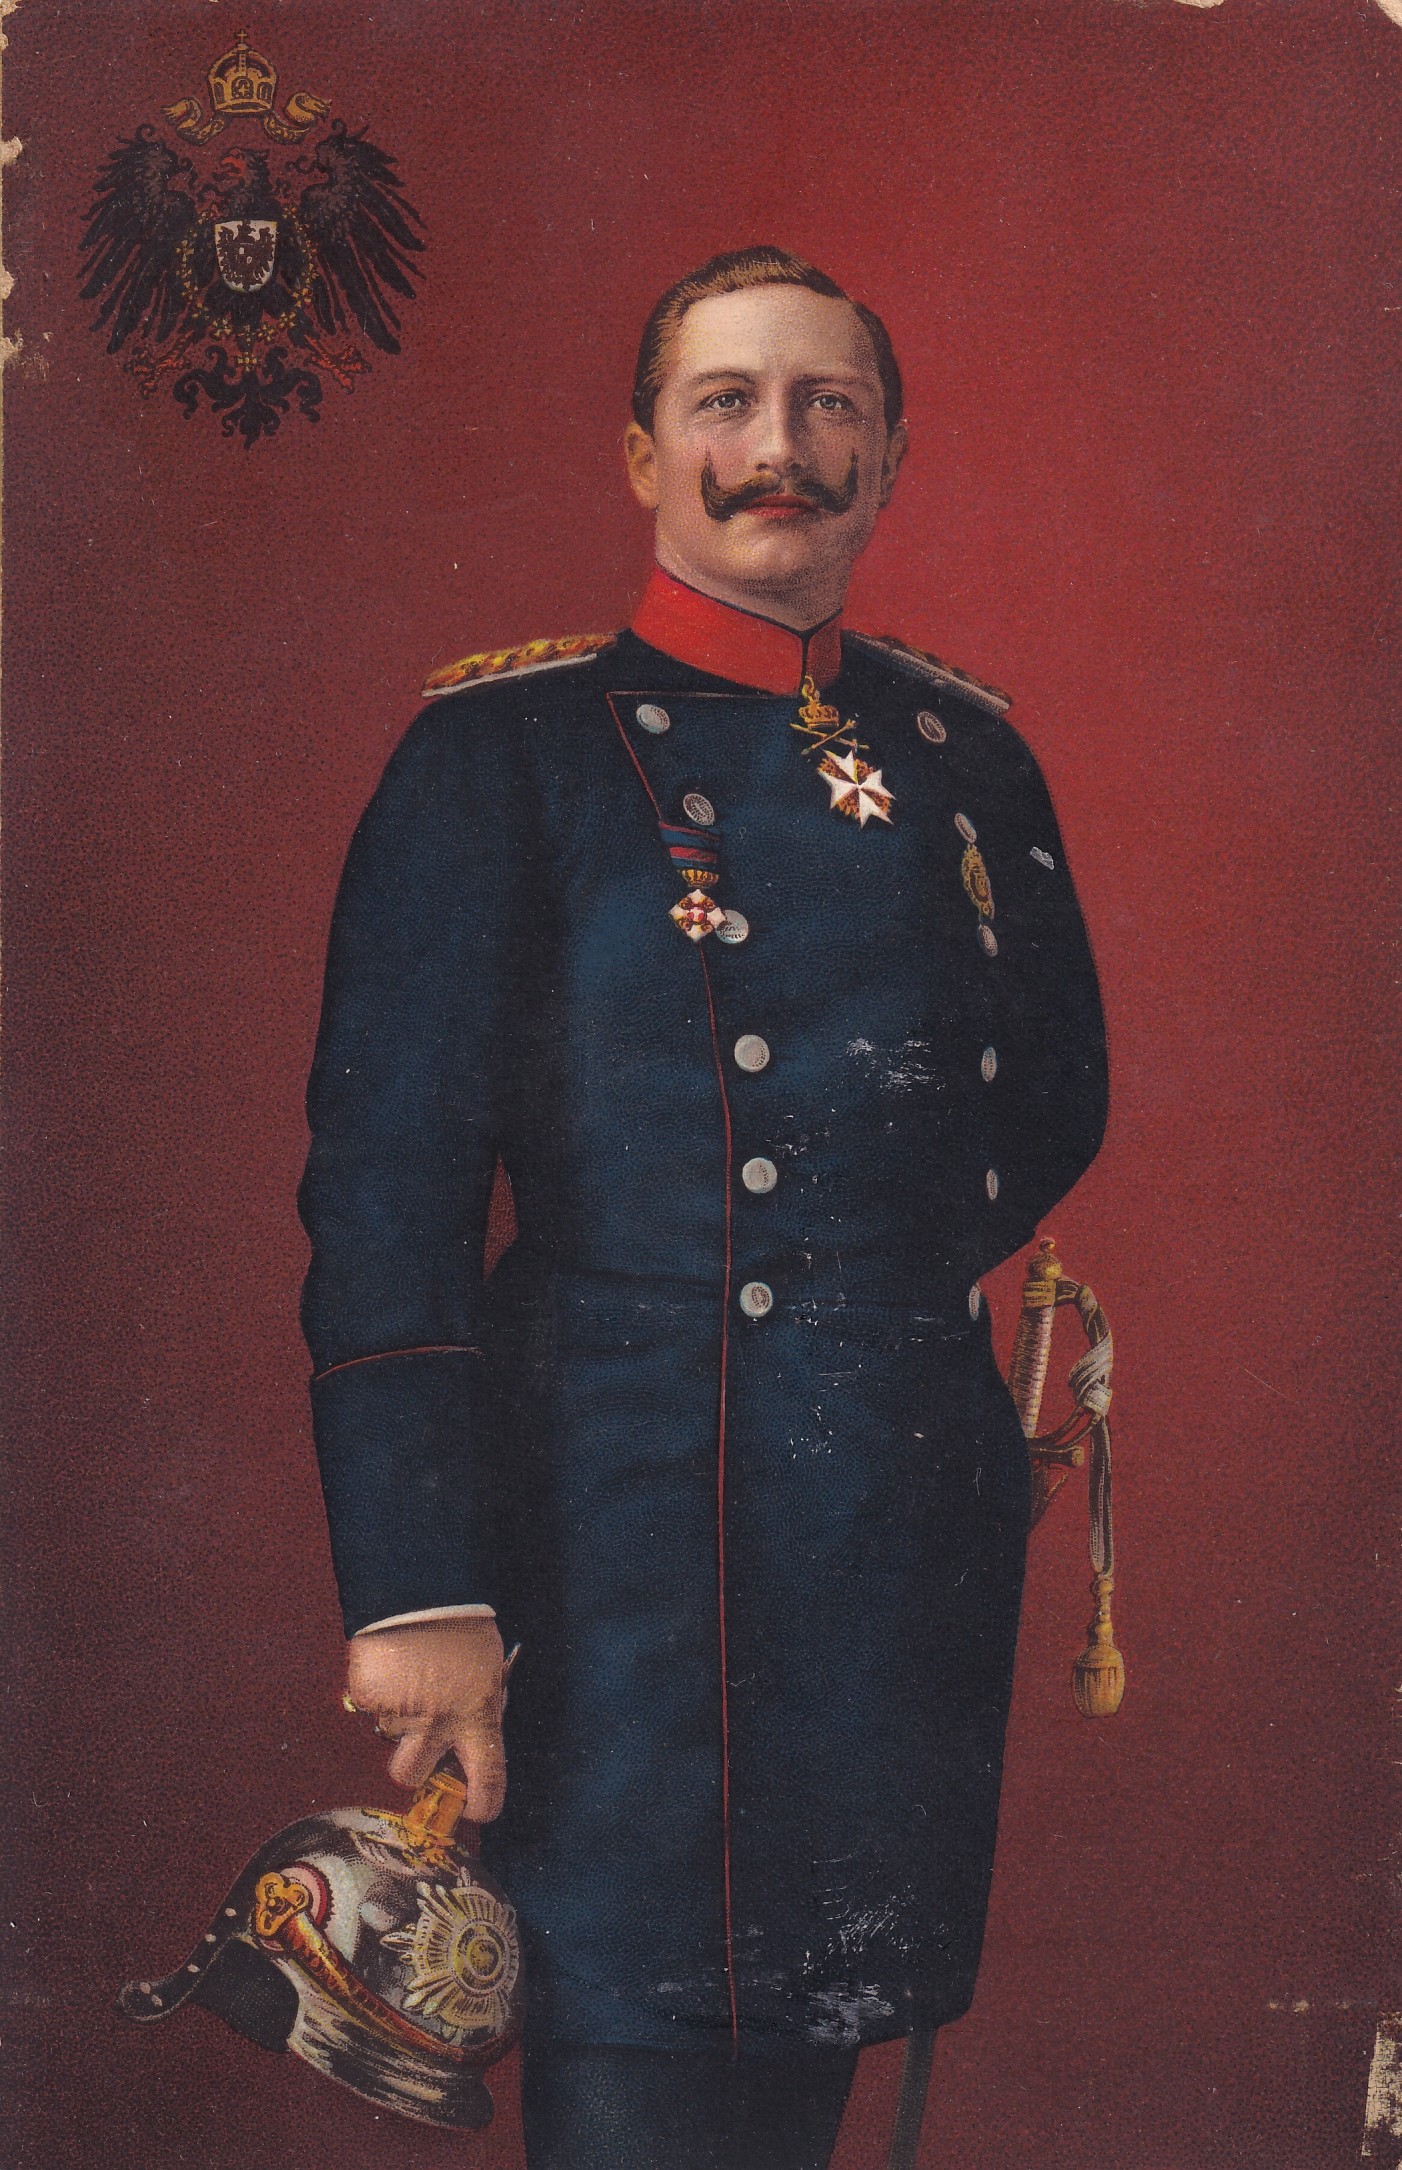 Bildpostkarte mit einem Porträt Kaiser Wilhelms II. (1859-1941) in Generalsuniform, um 1900 (Schloß Wernigerode GmbH RR-F)